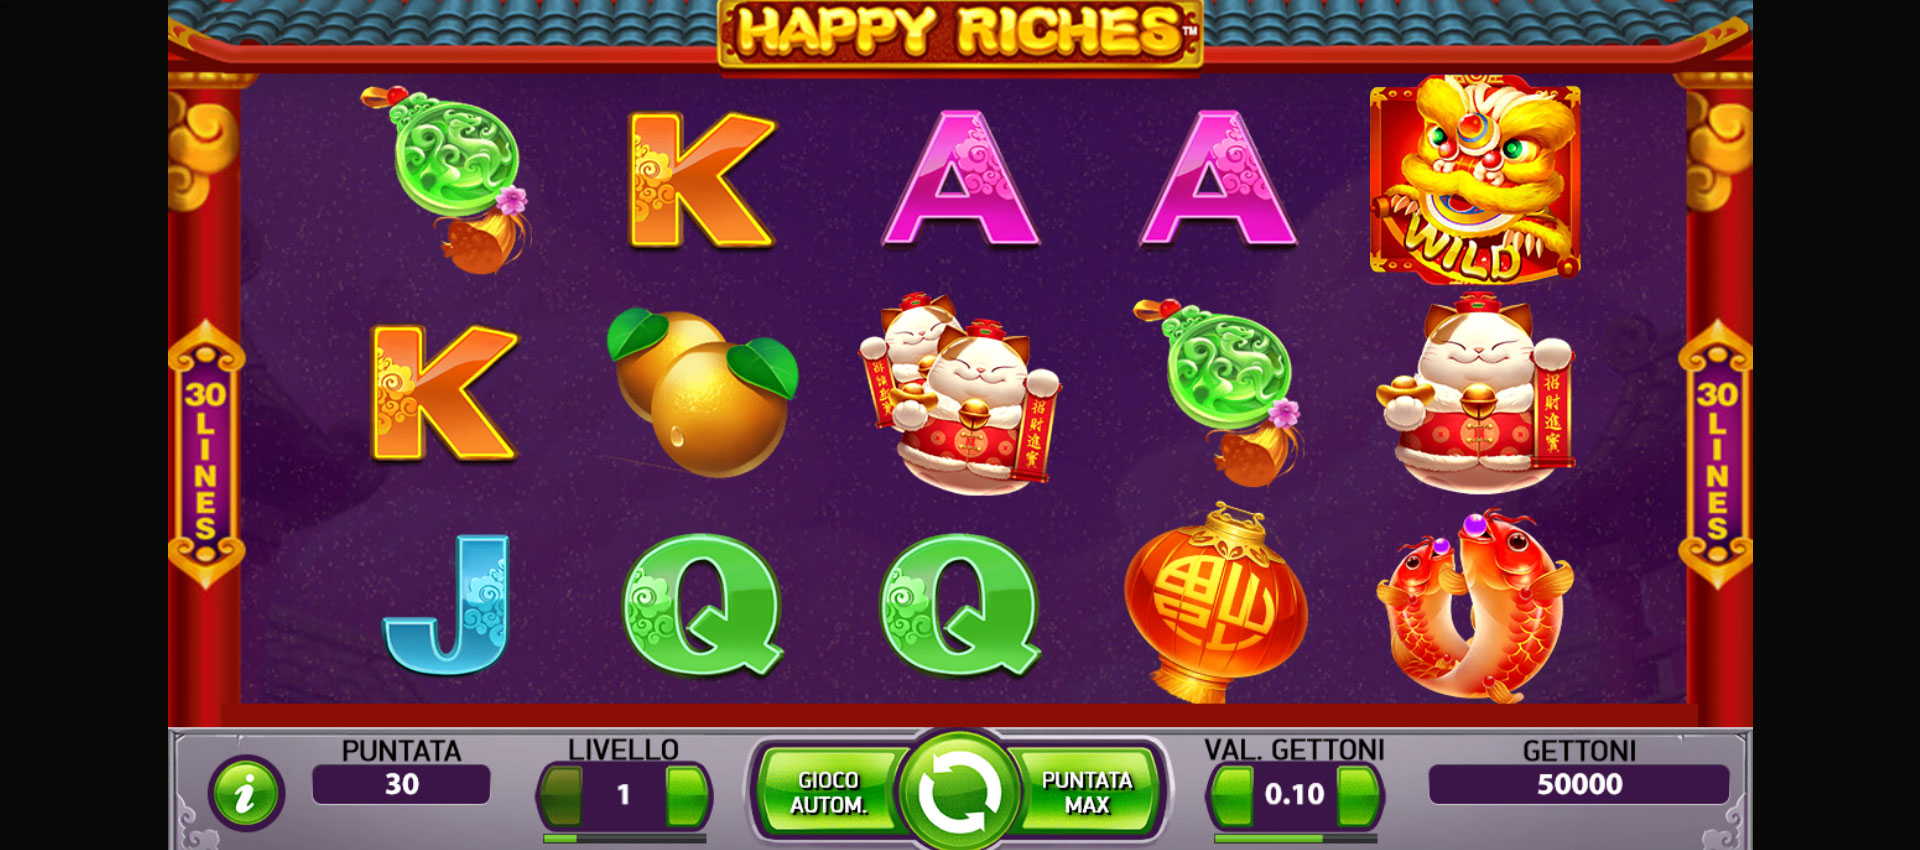 griglia di gioco della slot online happy riches